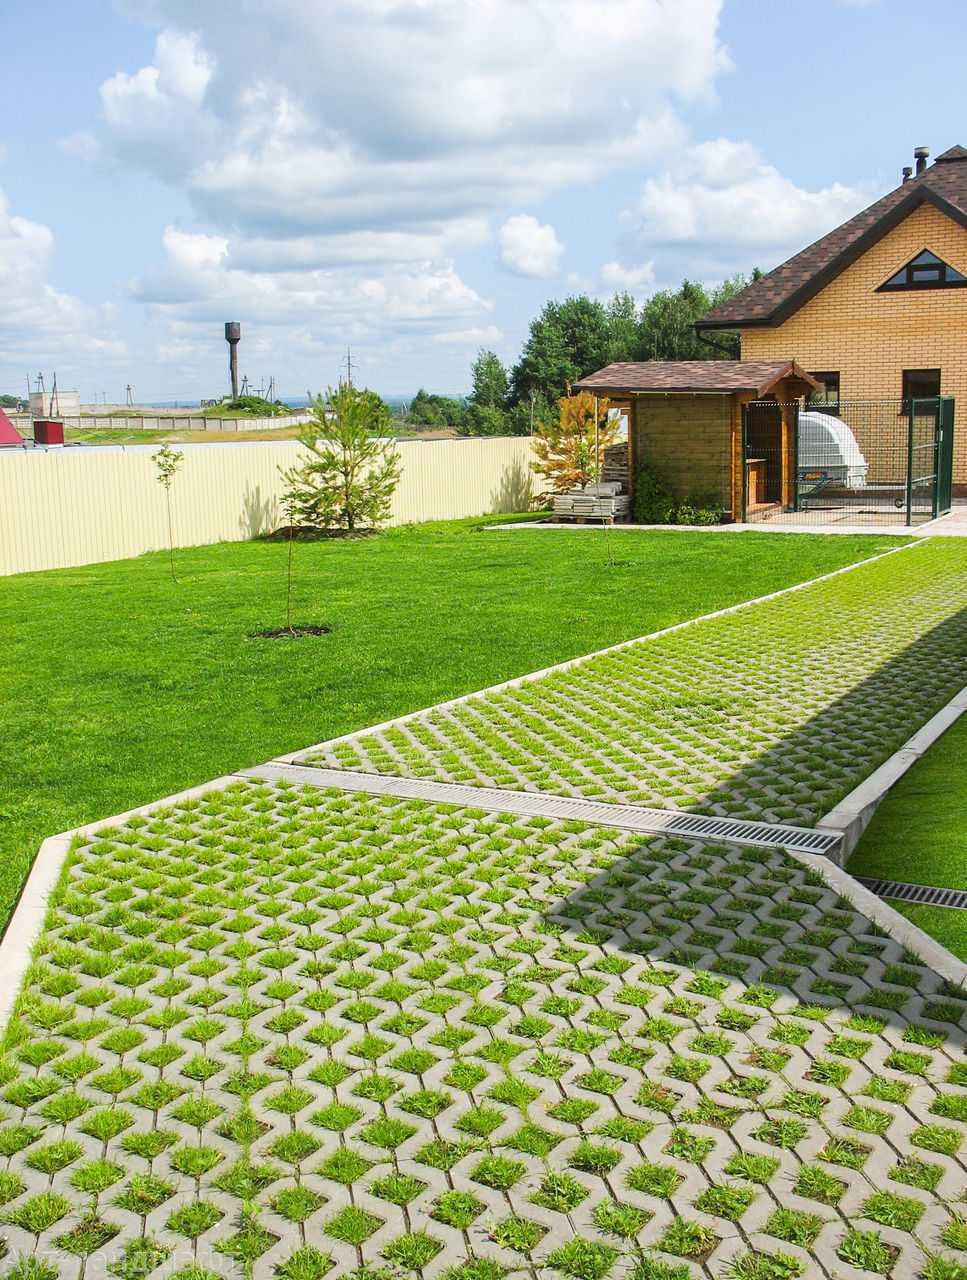 Тротуарная плитка с отверстиями для травы:преимущества;виды;применение и монтаж газонной решетки